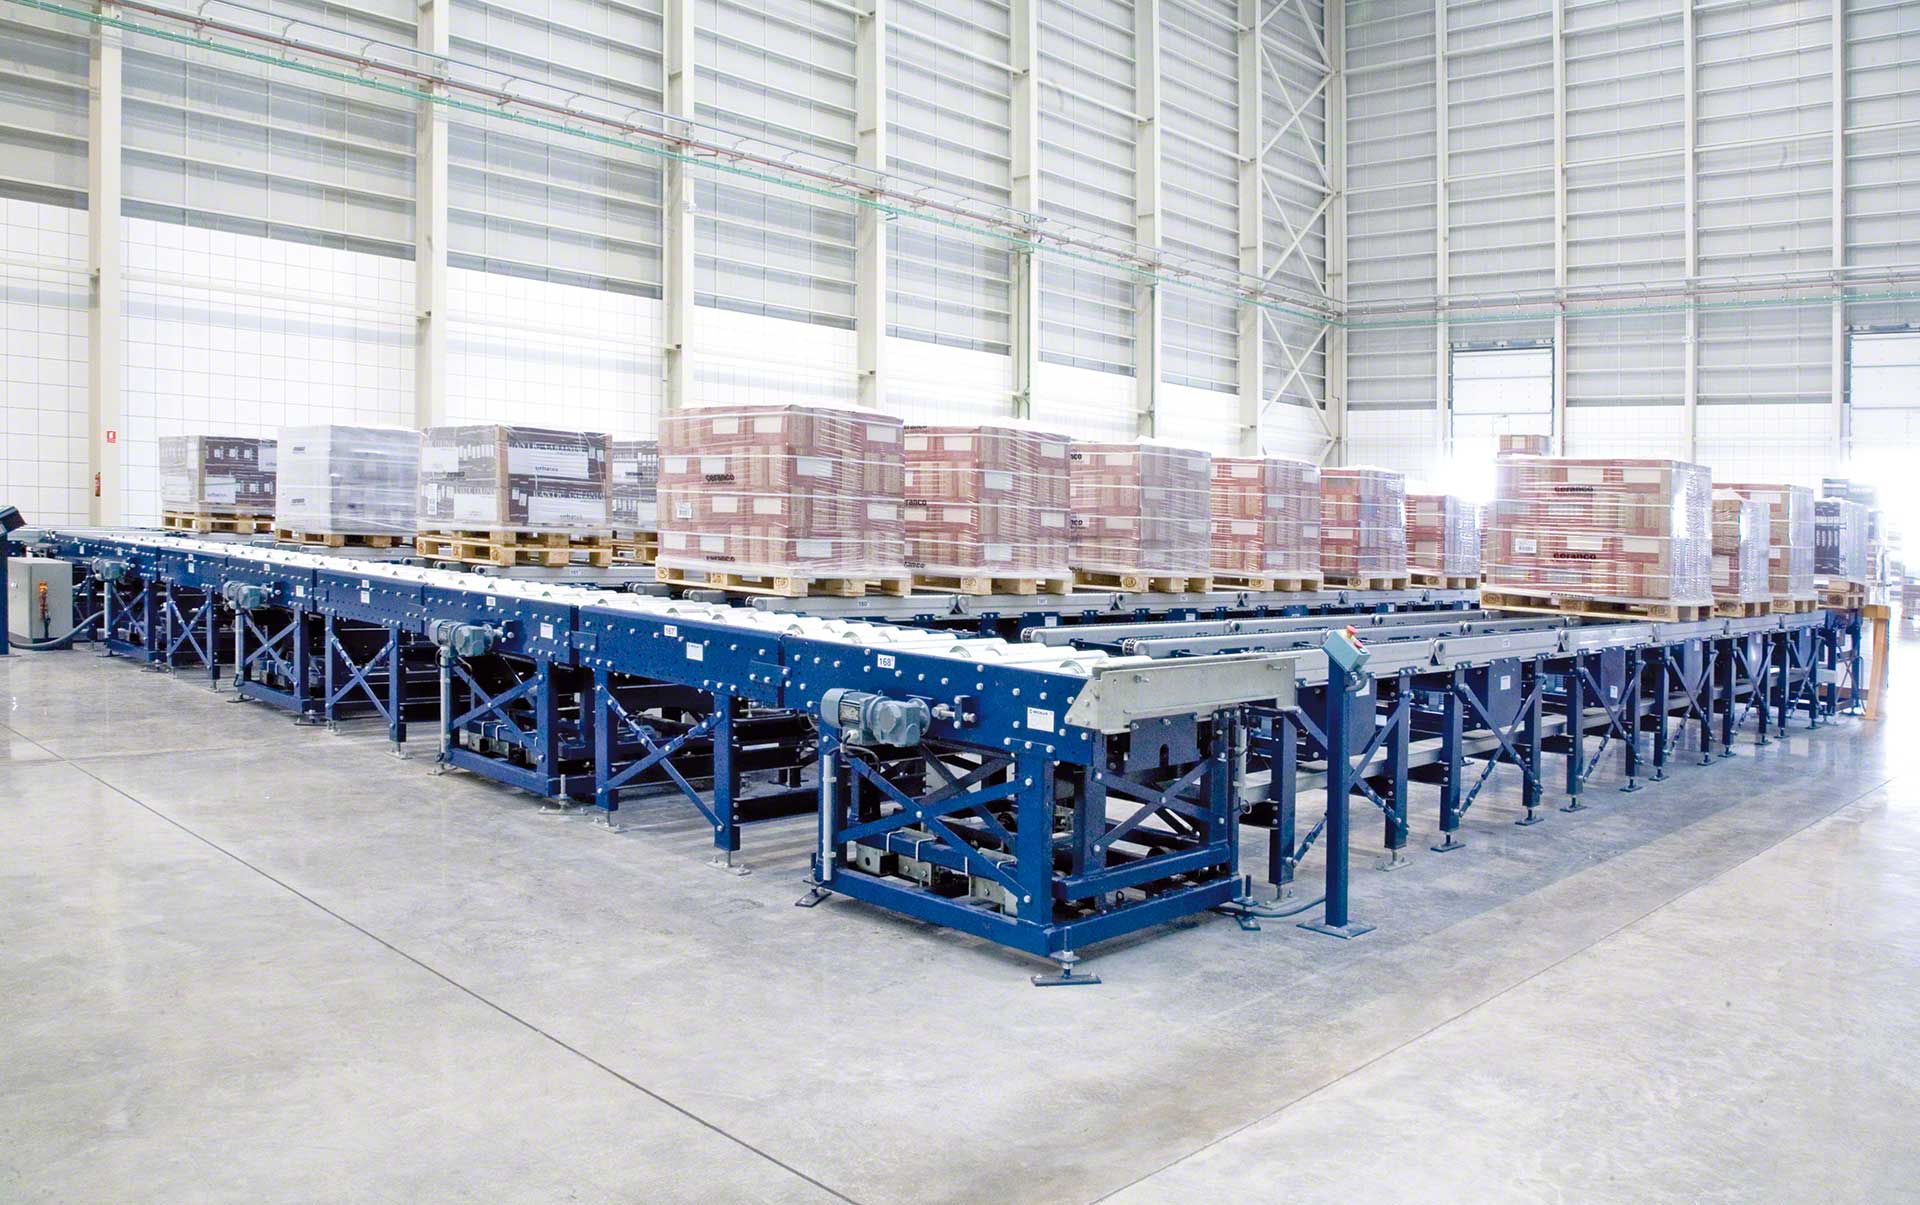 Accumulatiekanalen maken het mogelijk pallets te integreren in de automatische in- en uitbound logistiek van het magazijn